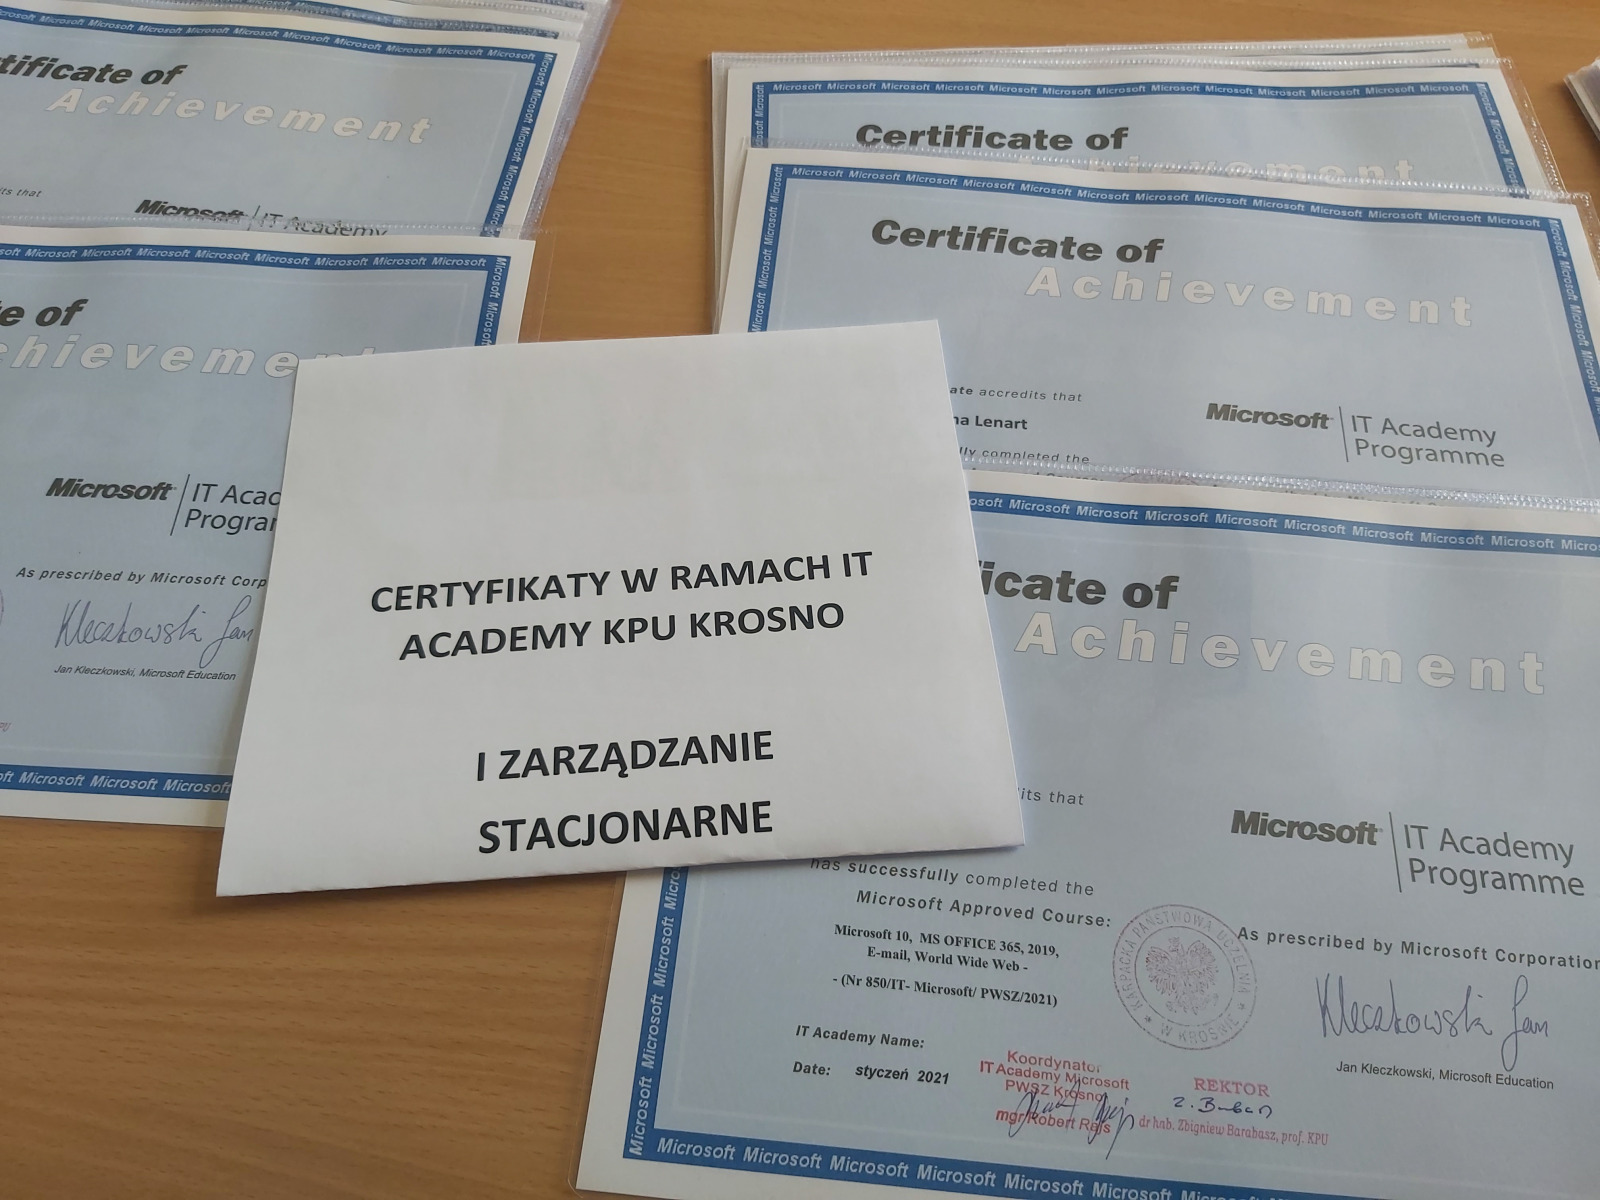 Certyfikaty w ramach IT Academy Microsoft KPU